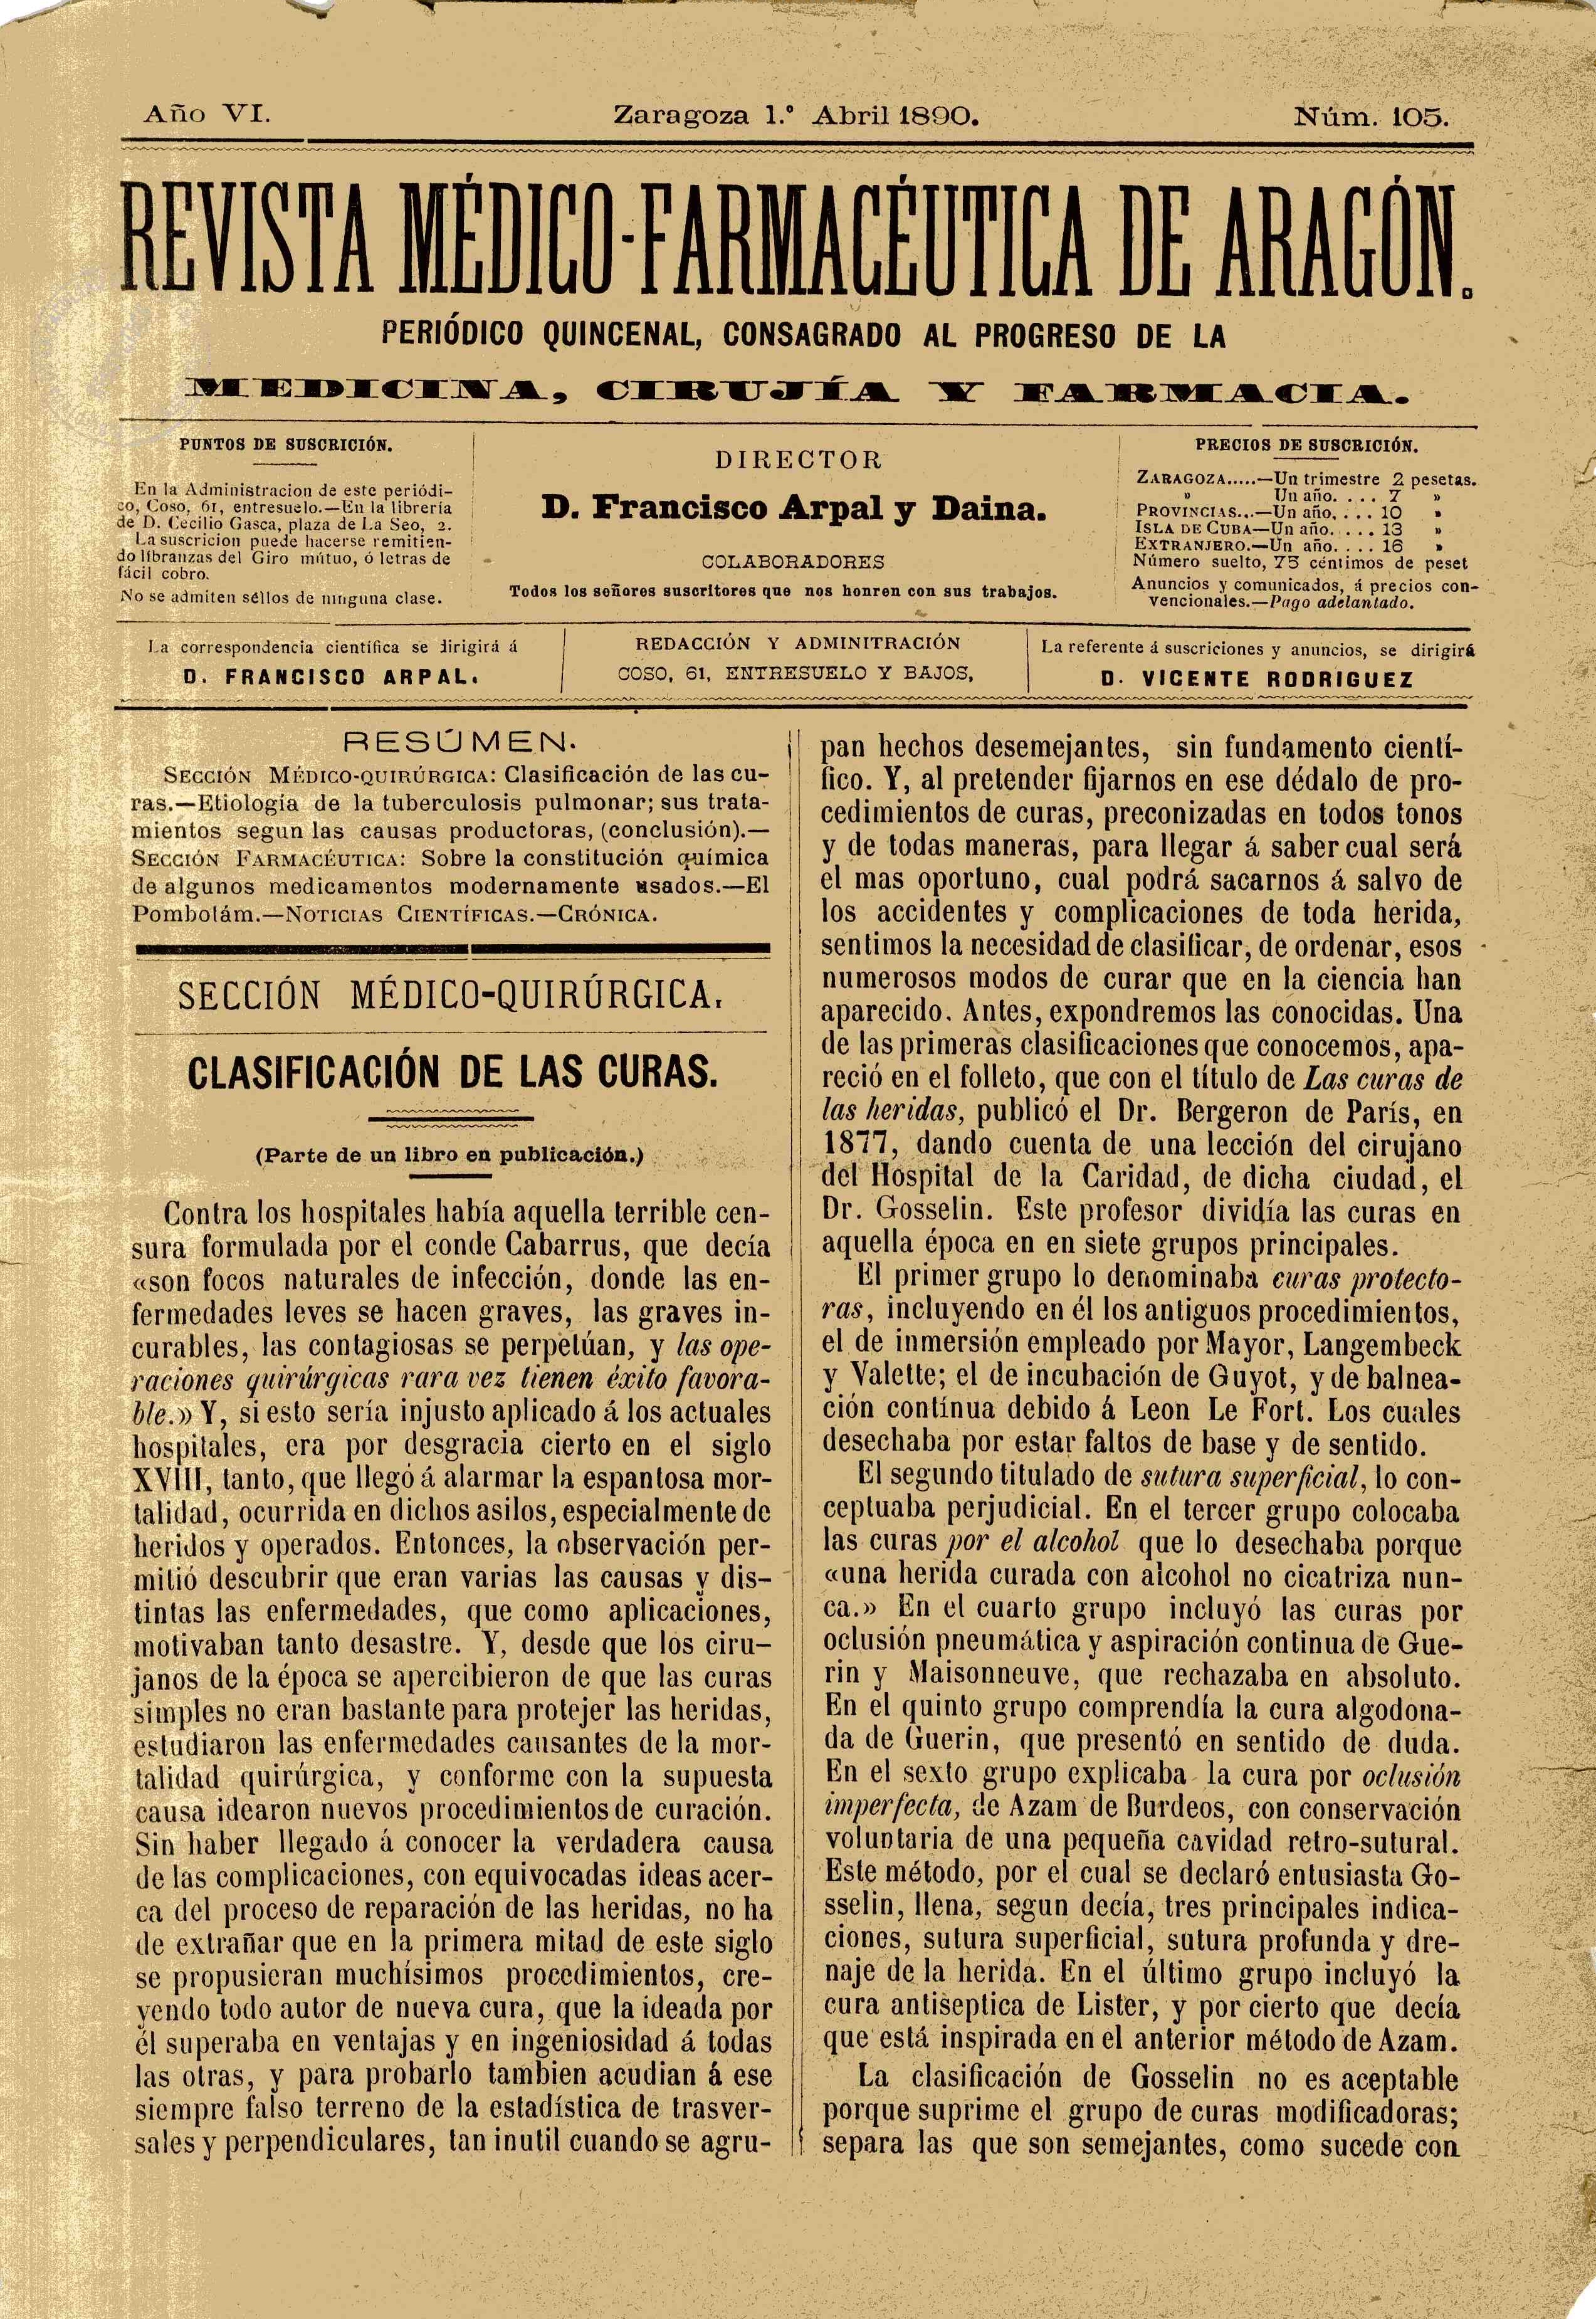 Revista médico-farmacéutica de Aragón, Año 6, 6 (1890)